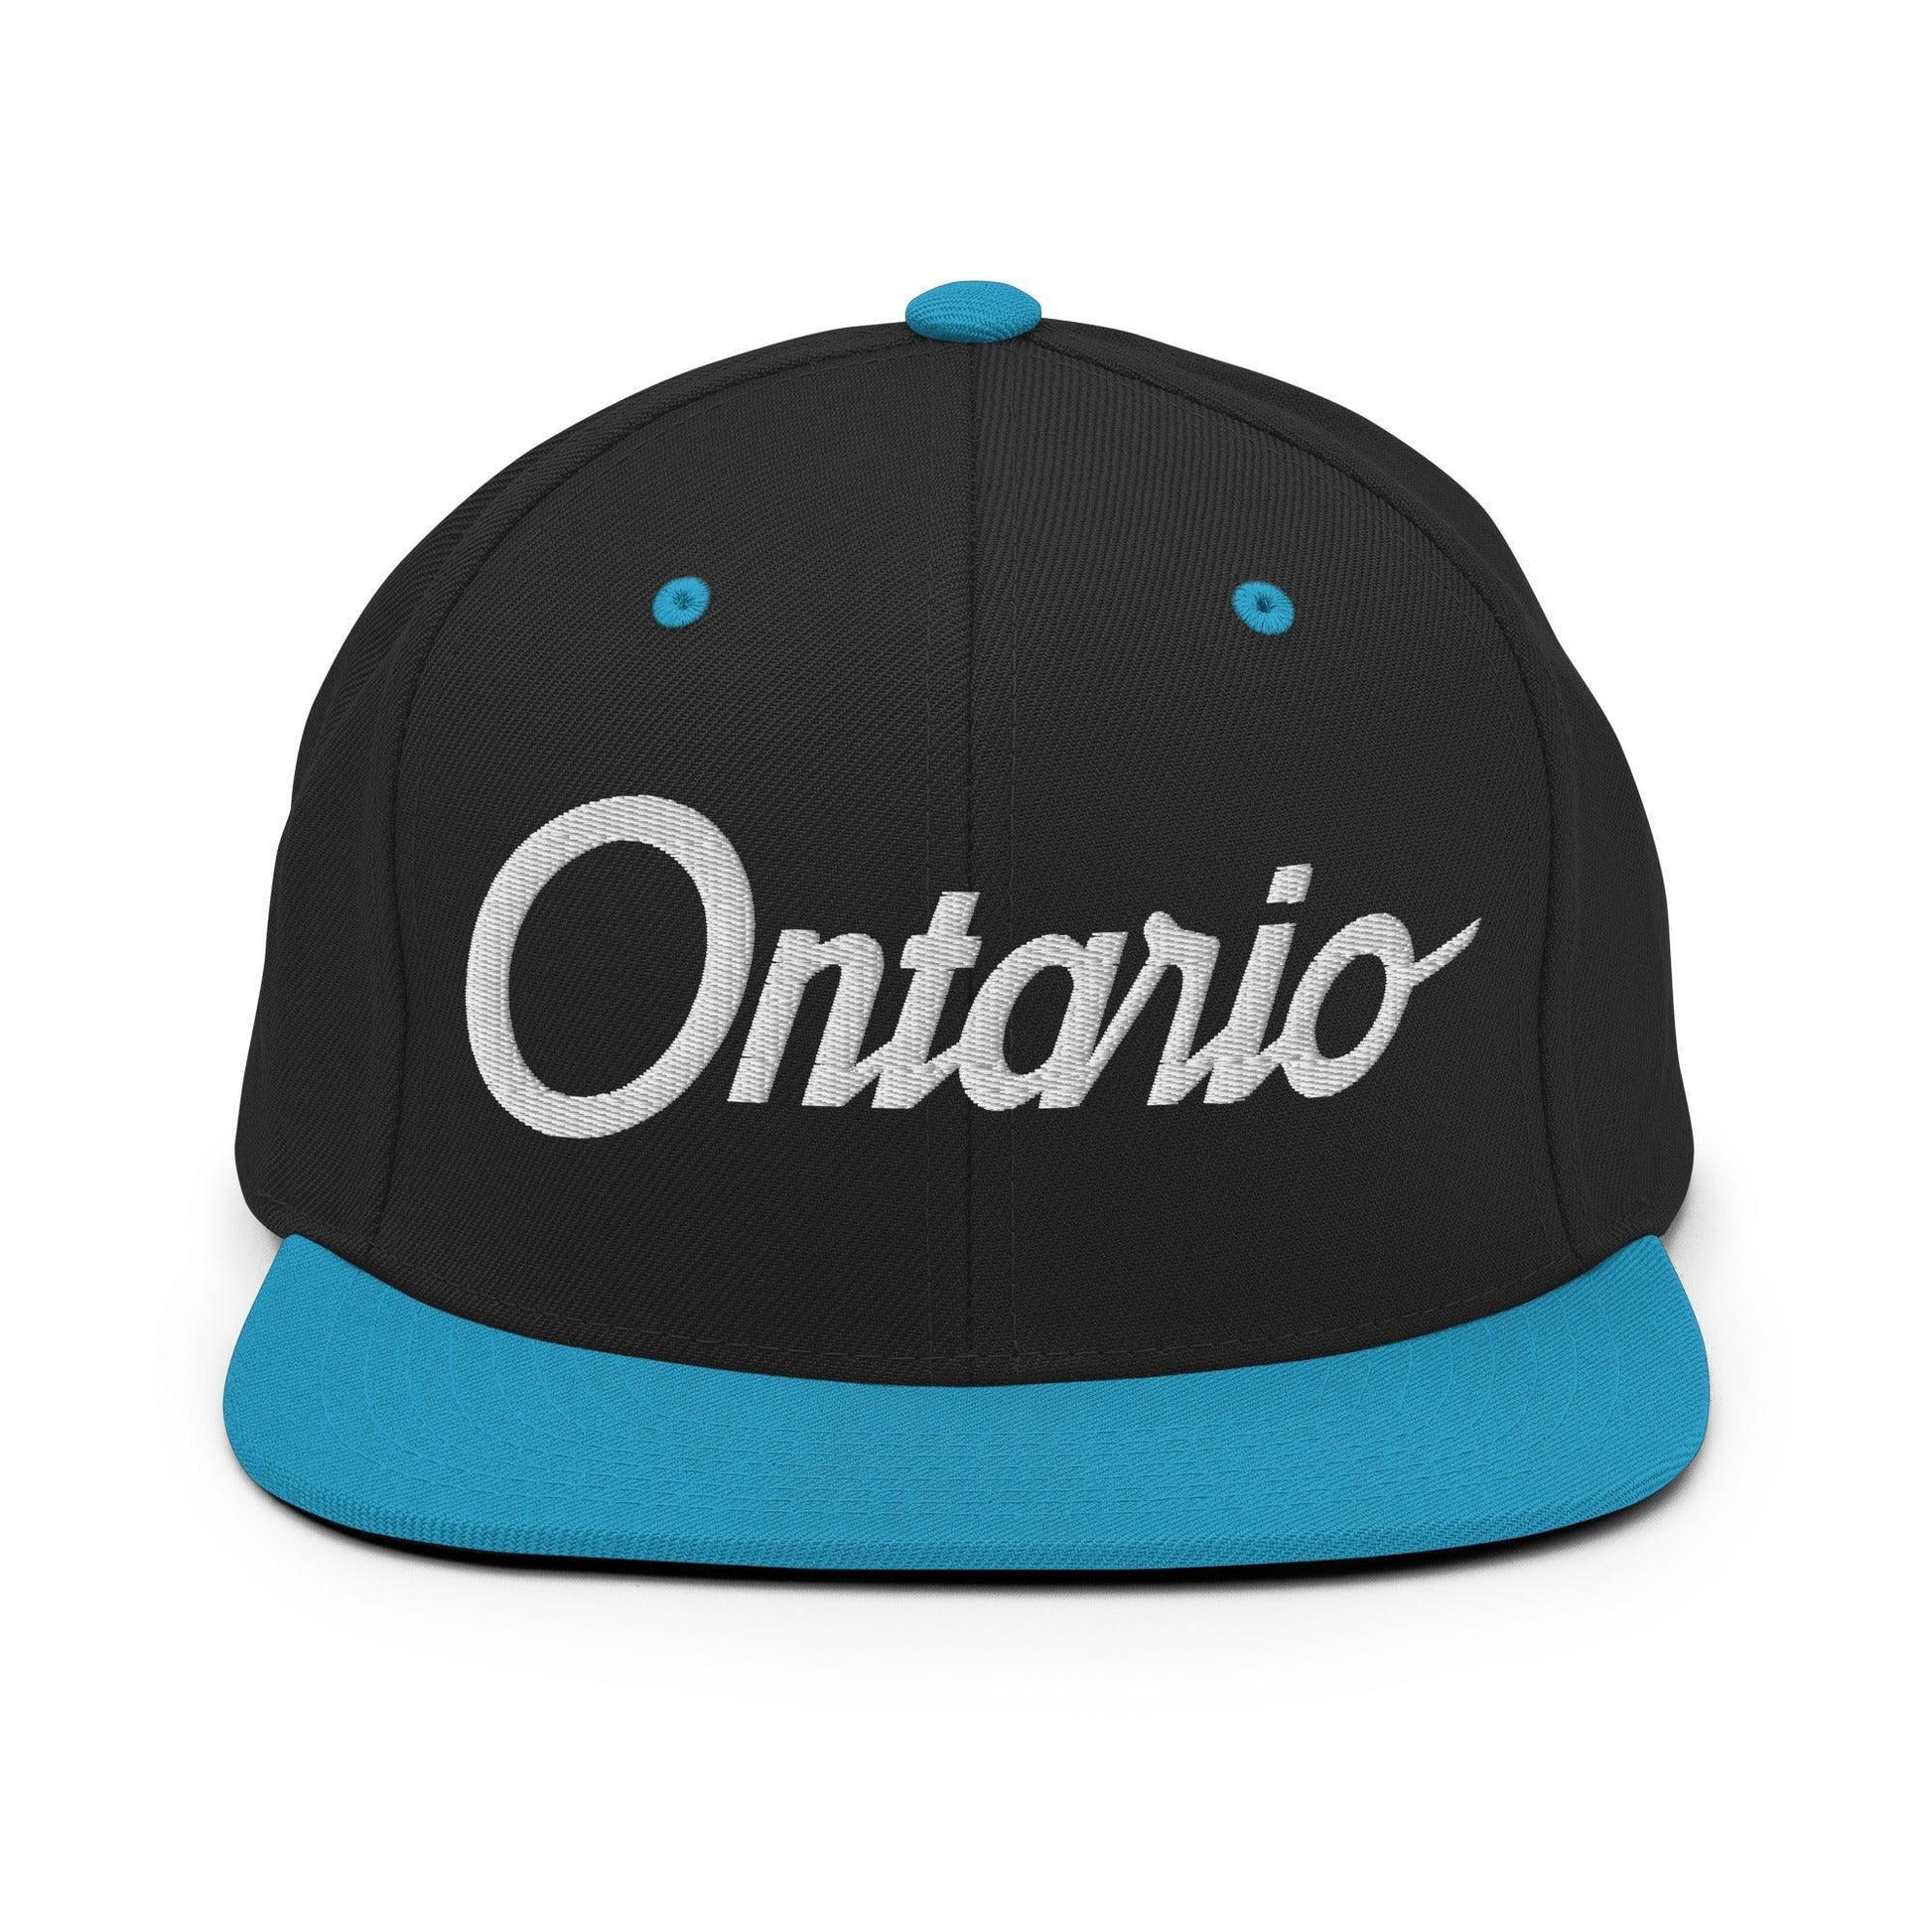 Ontario Script Snapback Hat Black/ Teal